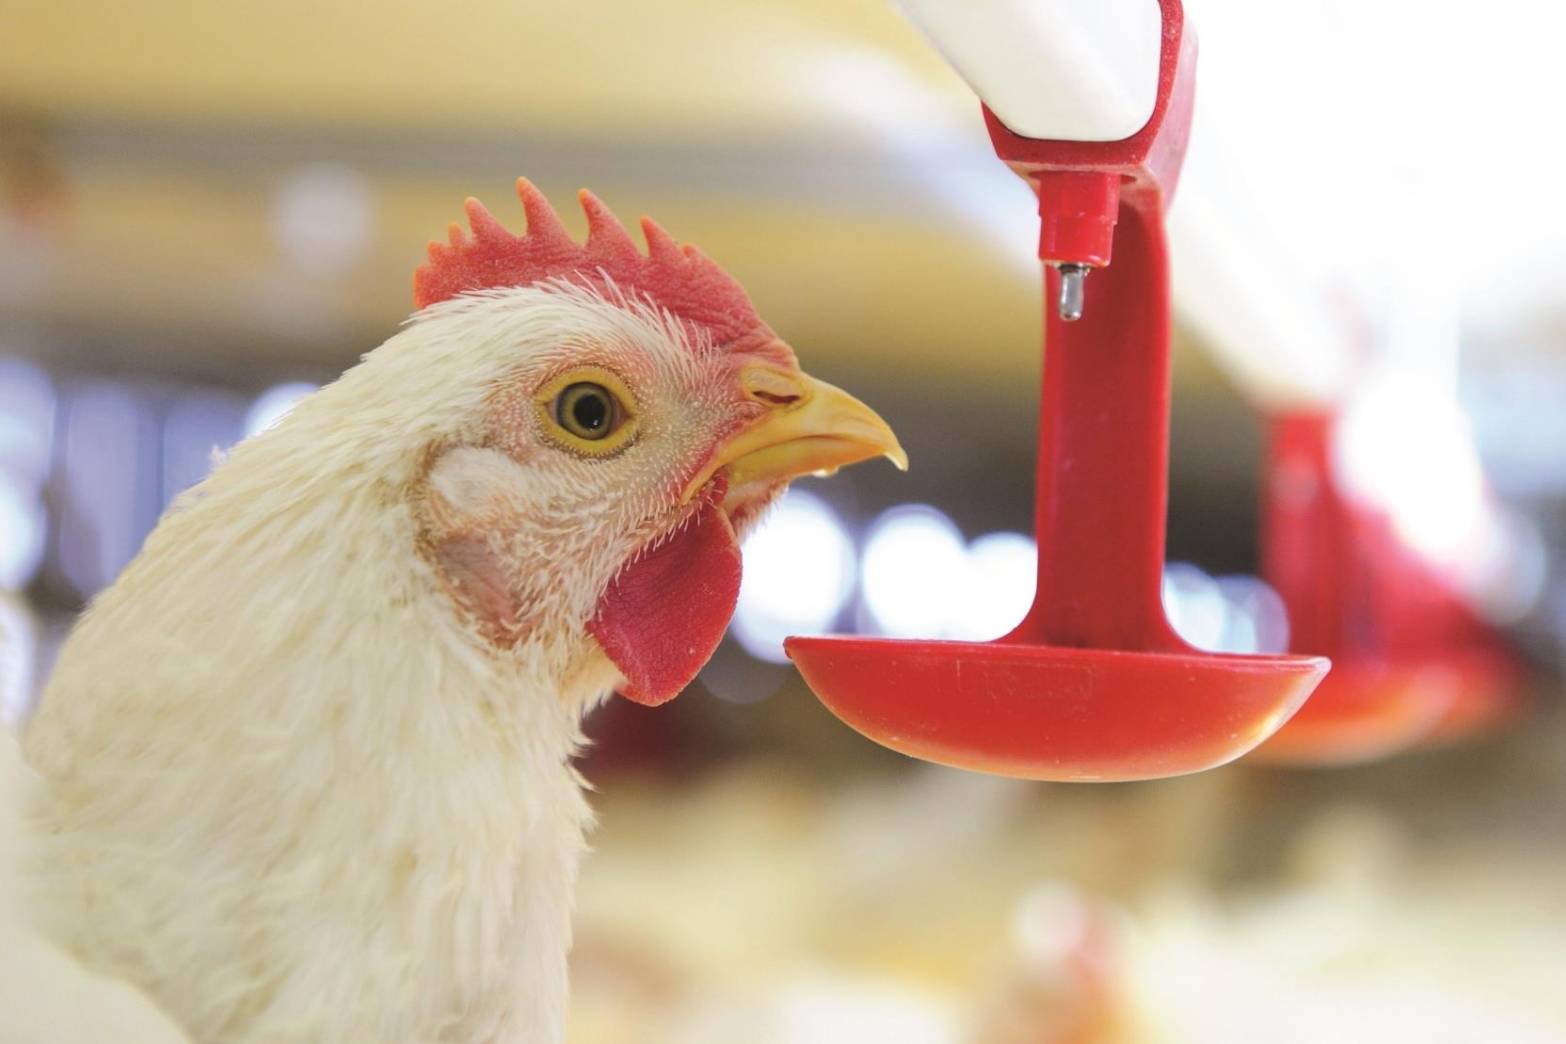 ซีพีเอฟ ยกระดับสวัสดิภาพสัตว์ เลี้ยงหมู-ไก่ด้วยโปรไบโอติกส์ สร้างภูมิจากภายใน ไม่ใช้ยาปฏิชีวนะเร่งโต ส่งผลดีต่อสุขภาพคน-สัตว์-สิ่งแวดล้อม